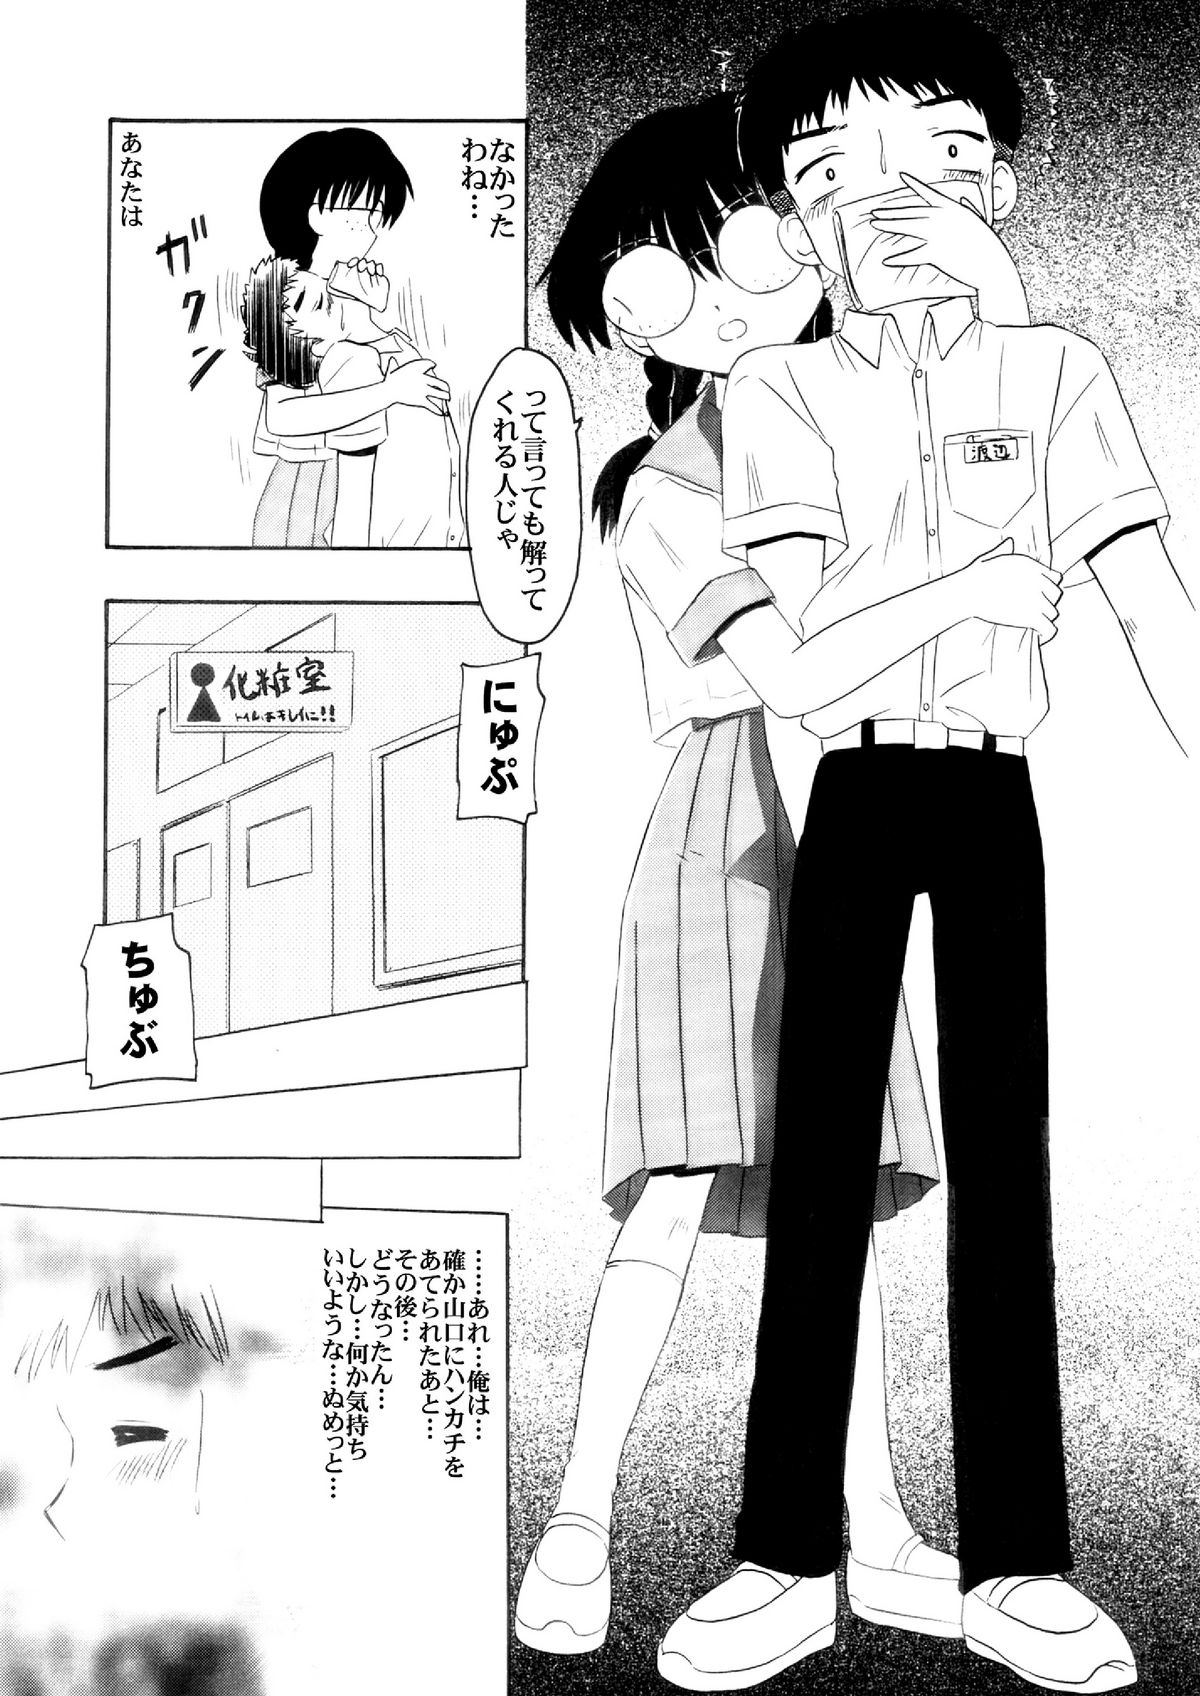 [Salvage Kouboh] Sousaku tamashii 01 page 17 full